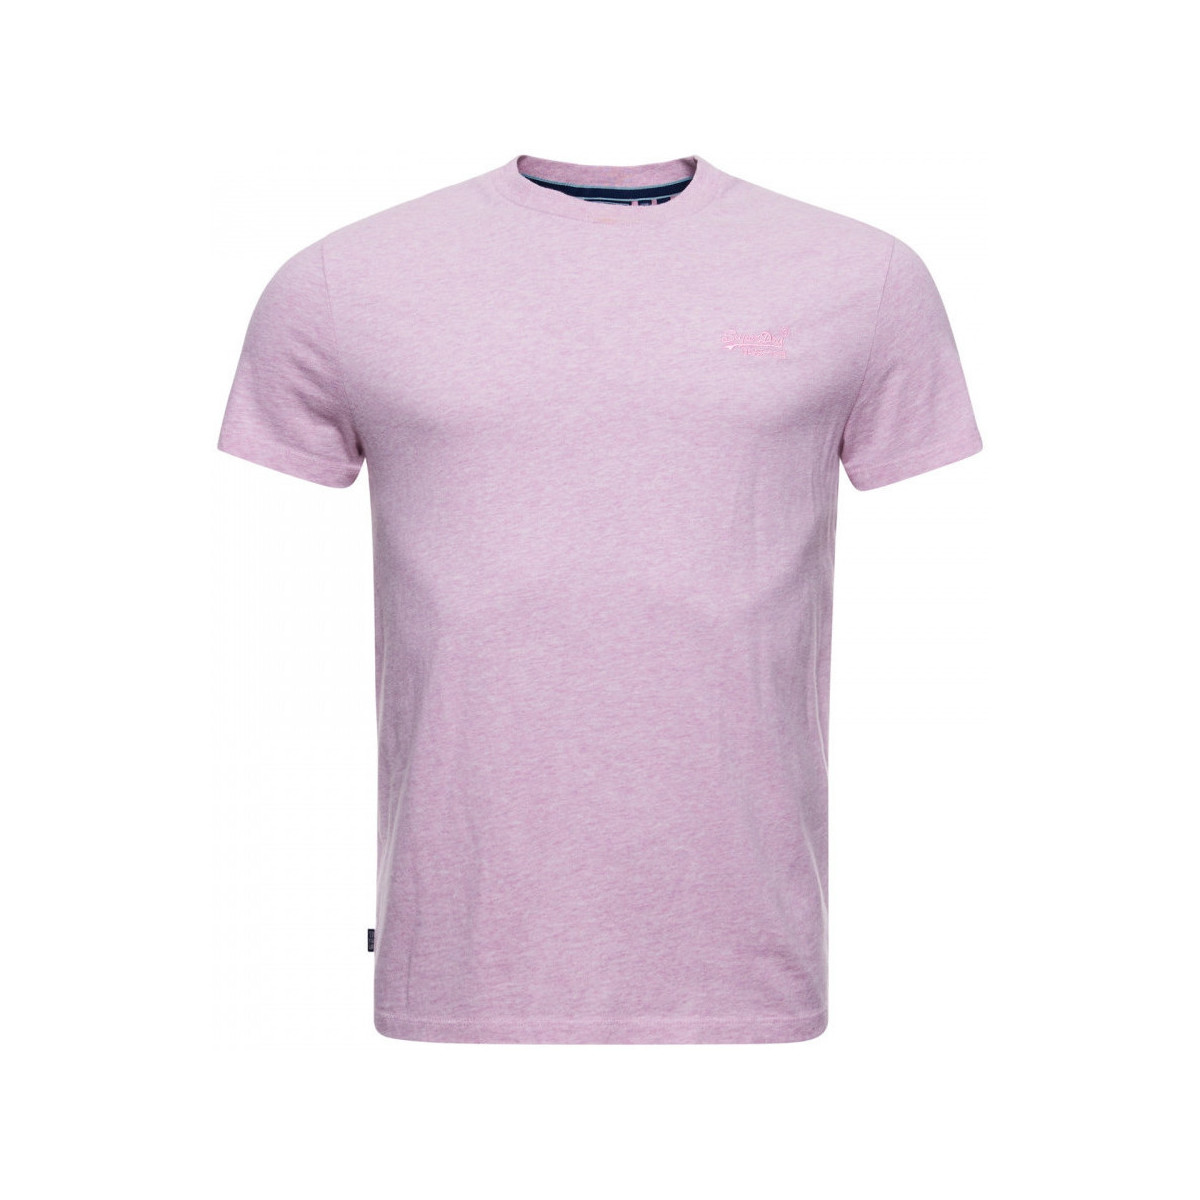 Îmbracaminte Bărbați Tricouri & Tricouri Polo Superdry Vintage logo emb roz